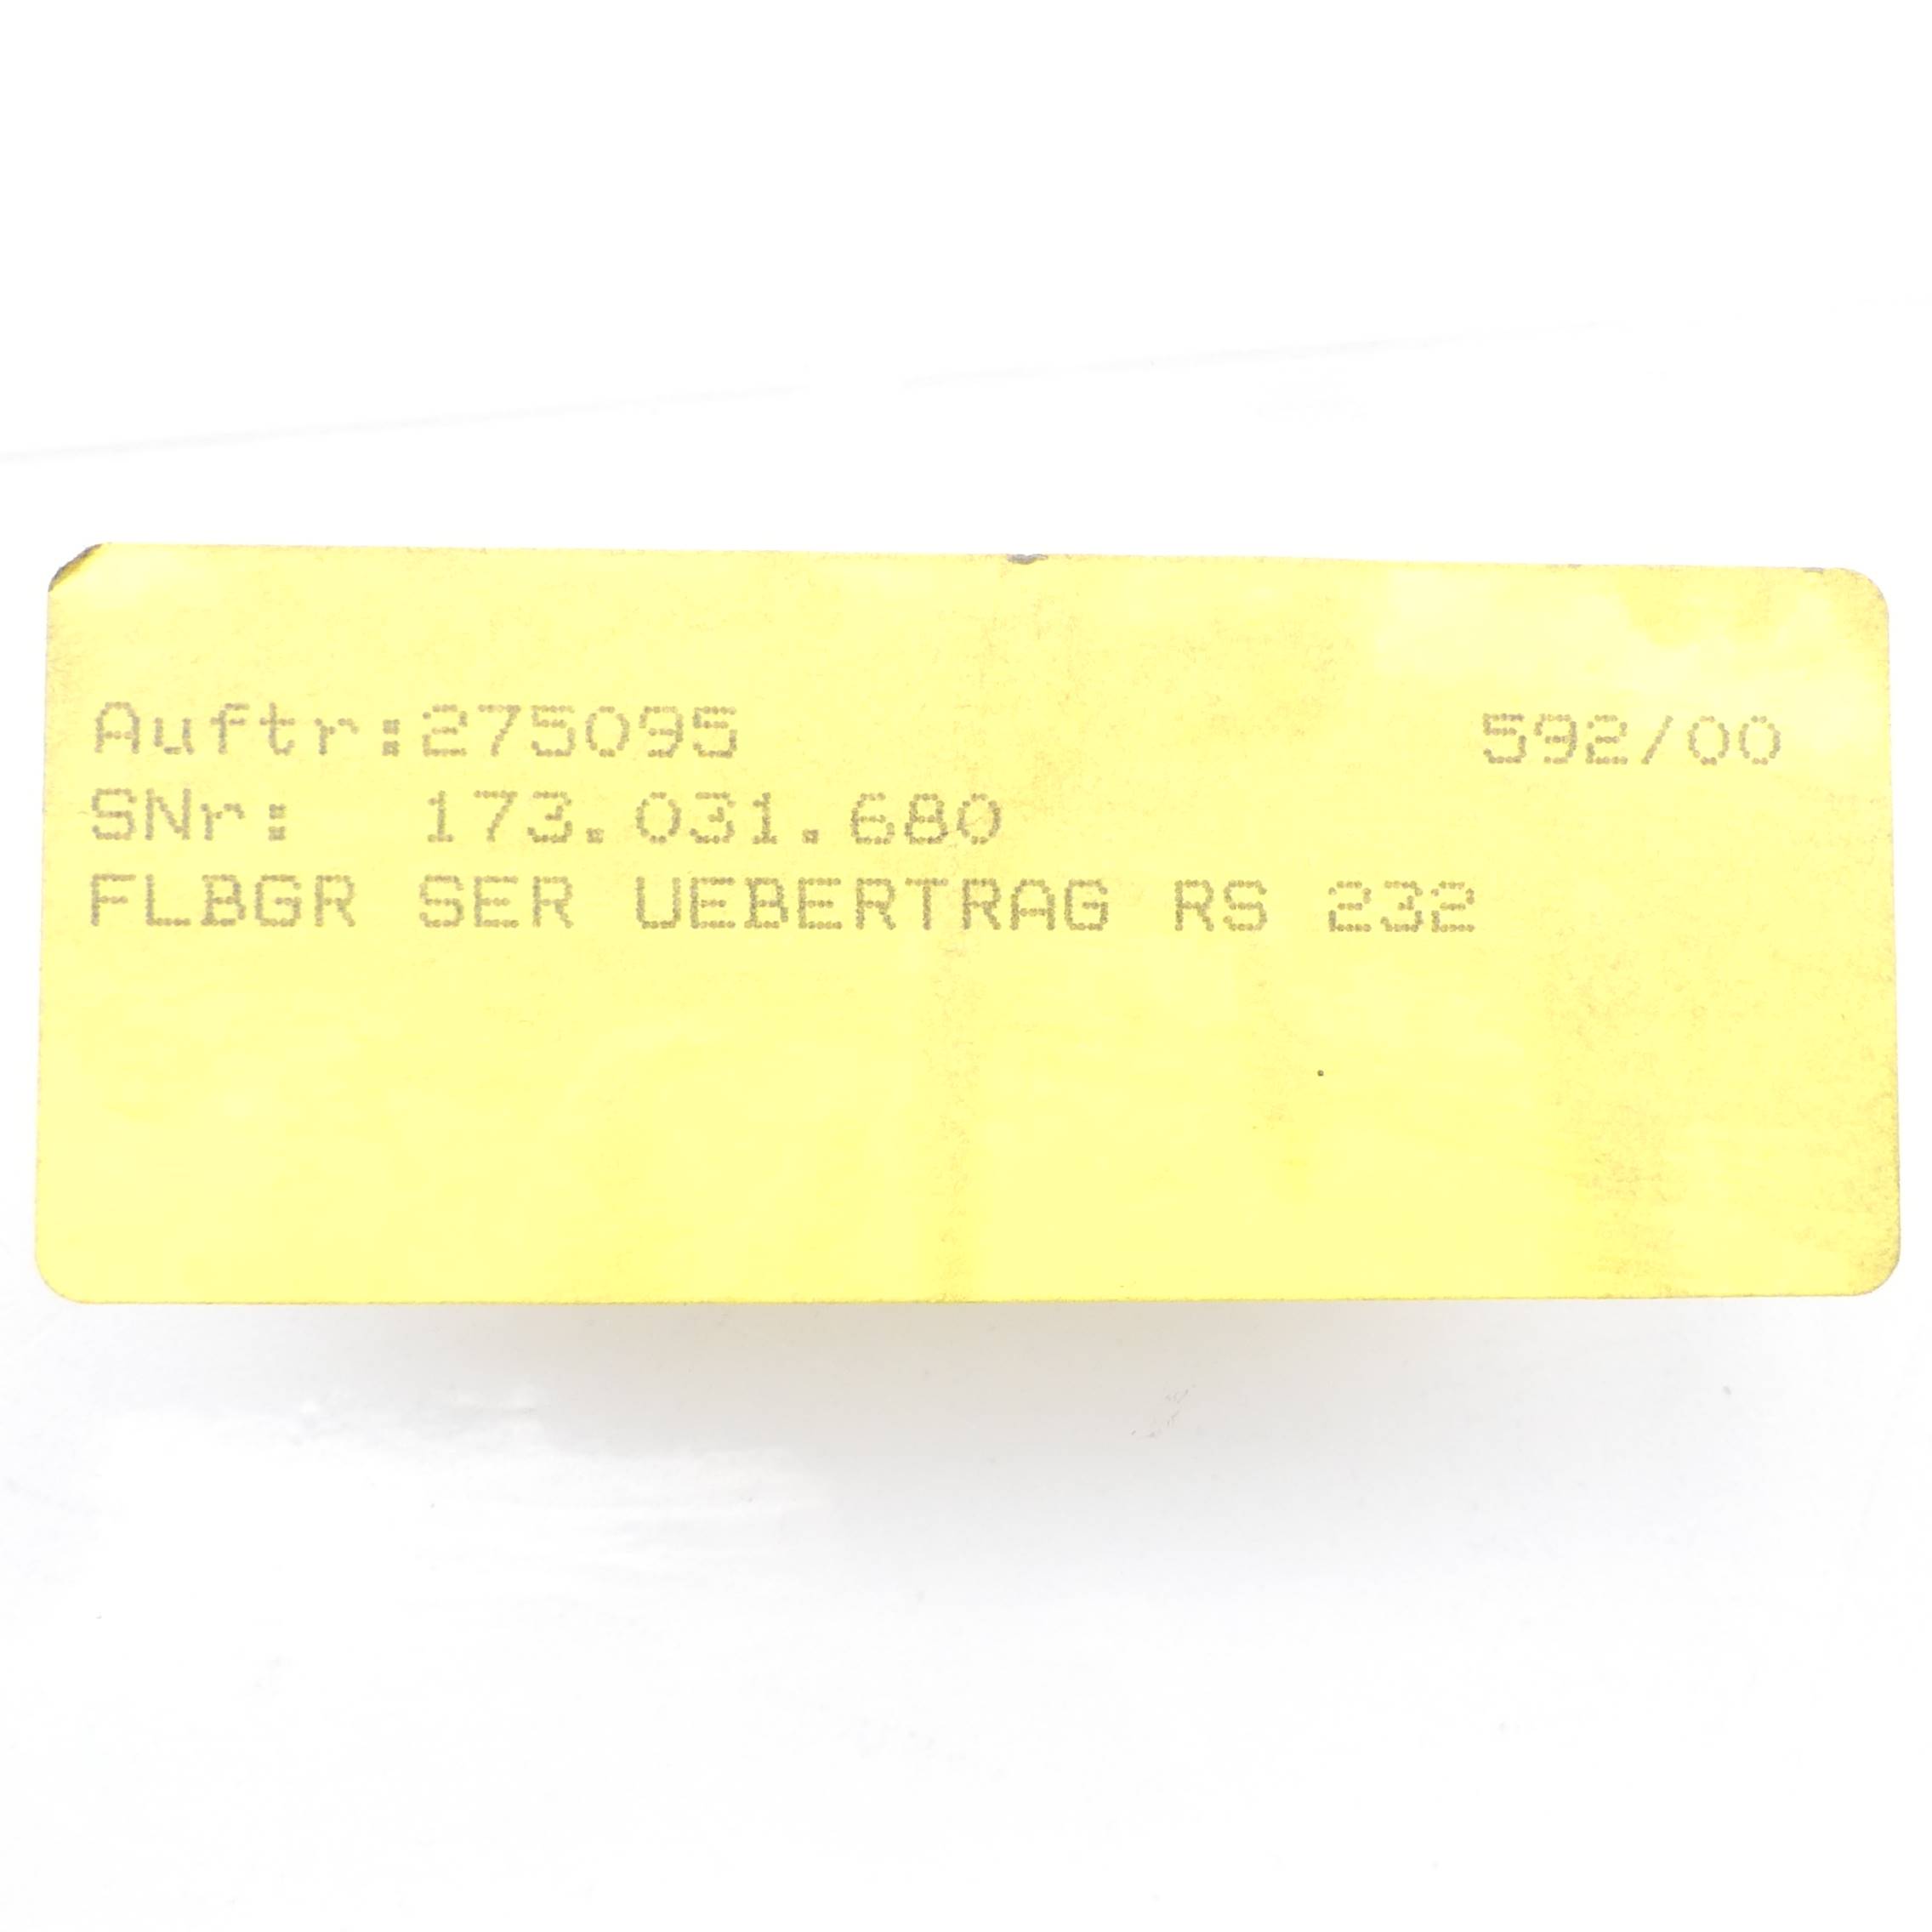 FLBGR SER UEBERTRAG RS 232 